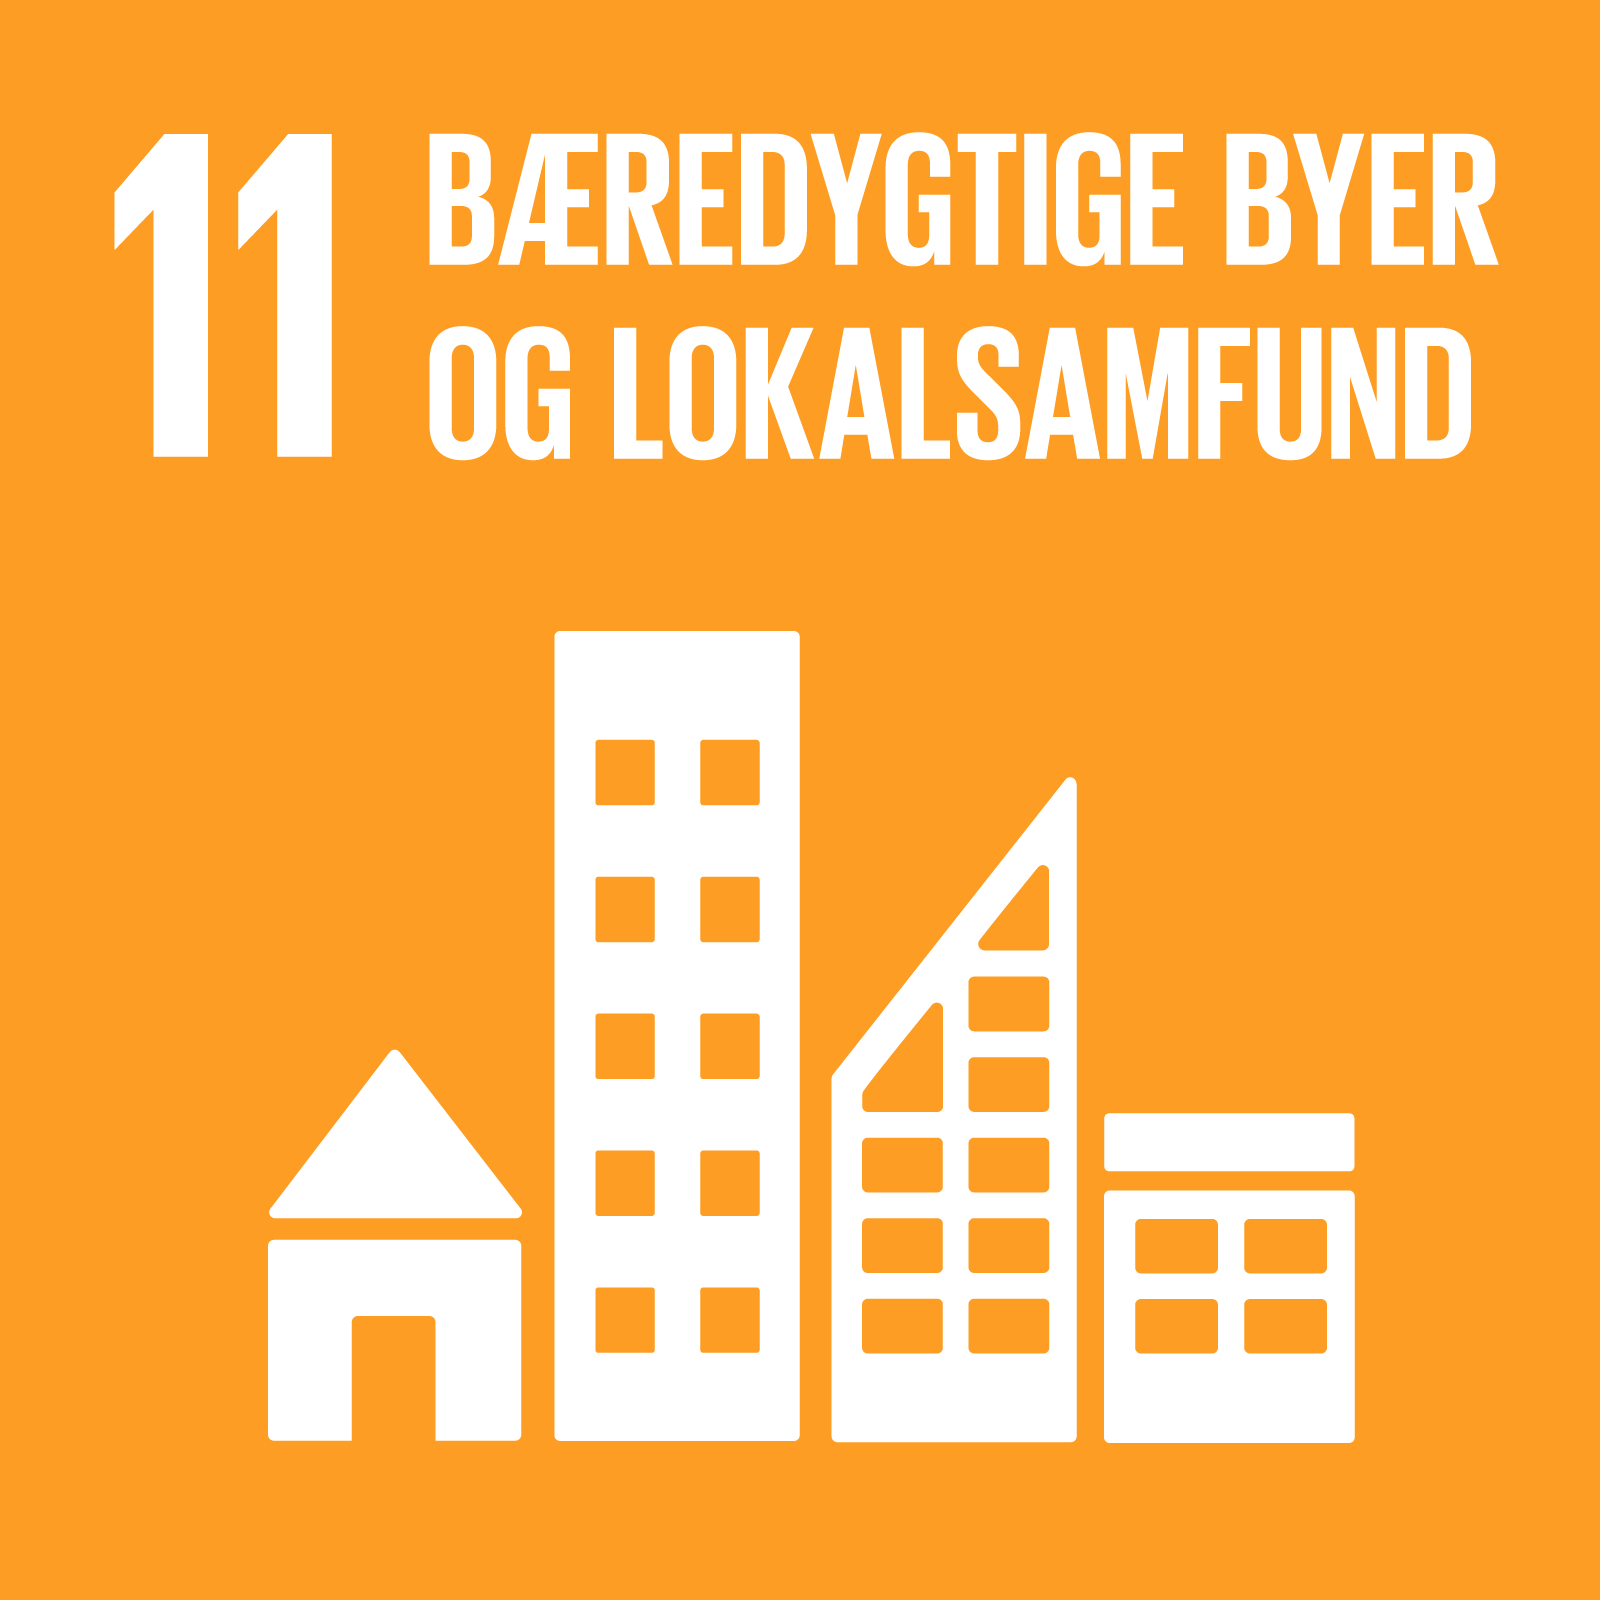 Verdensmål 11 logo Bæredygtige byer og lokalsamfund